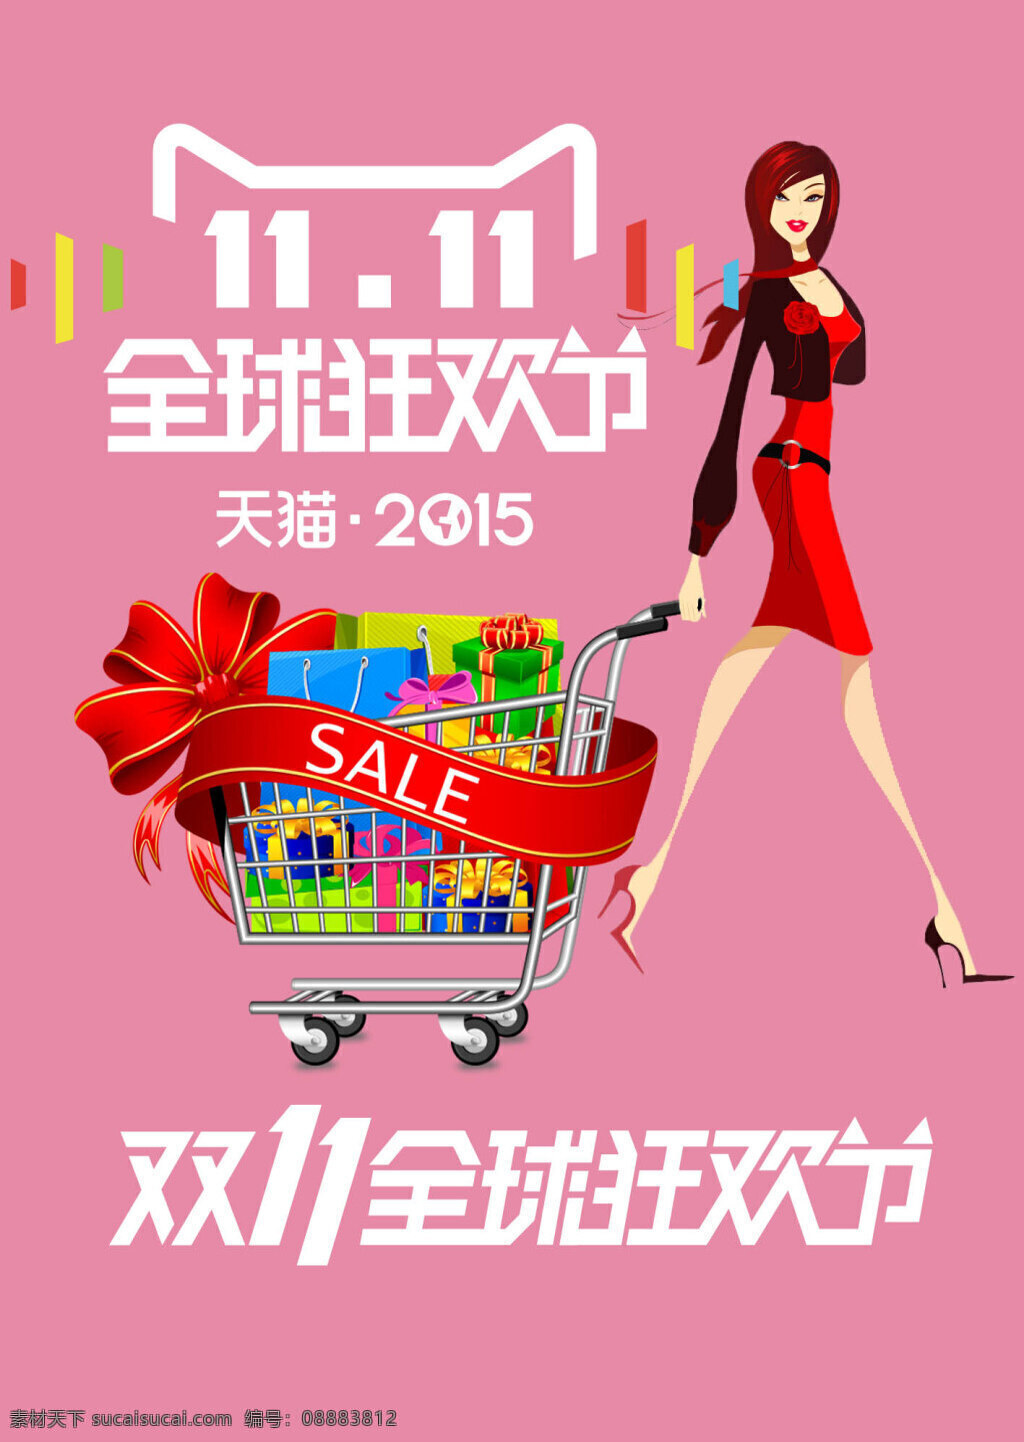 双 时尚 商业 海报 时尚商业海报 天猫 2015 全球 狂欢节 logo 粉色